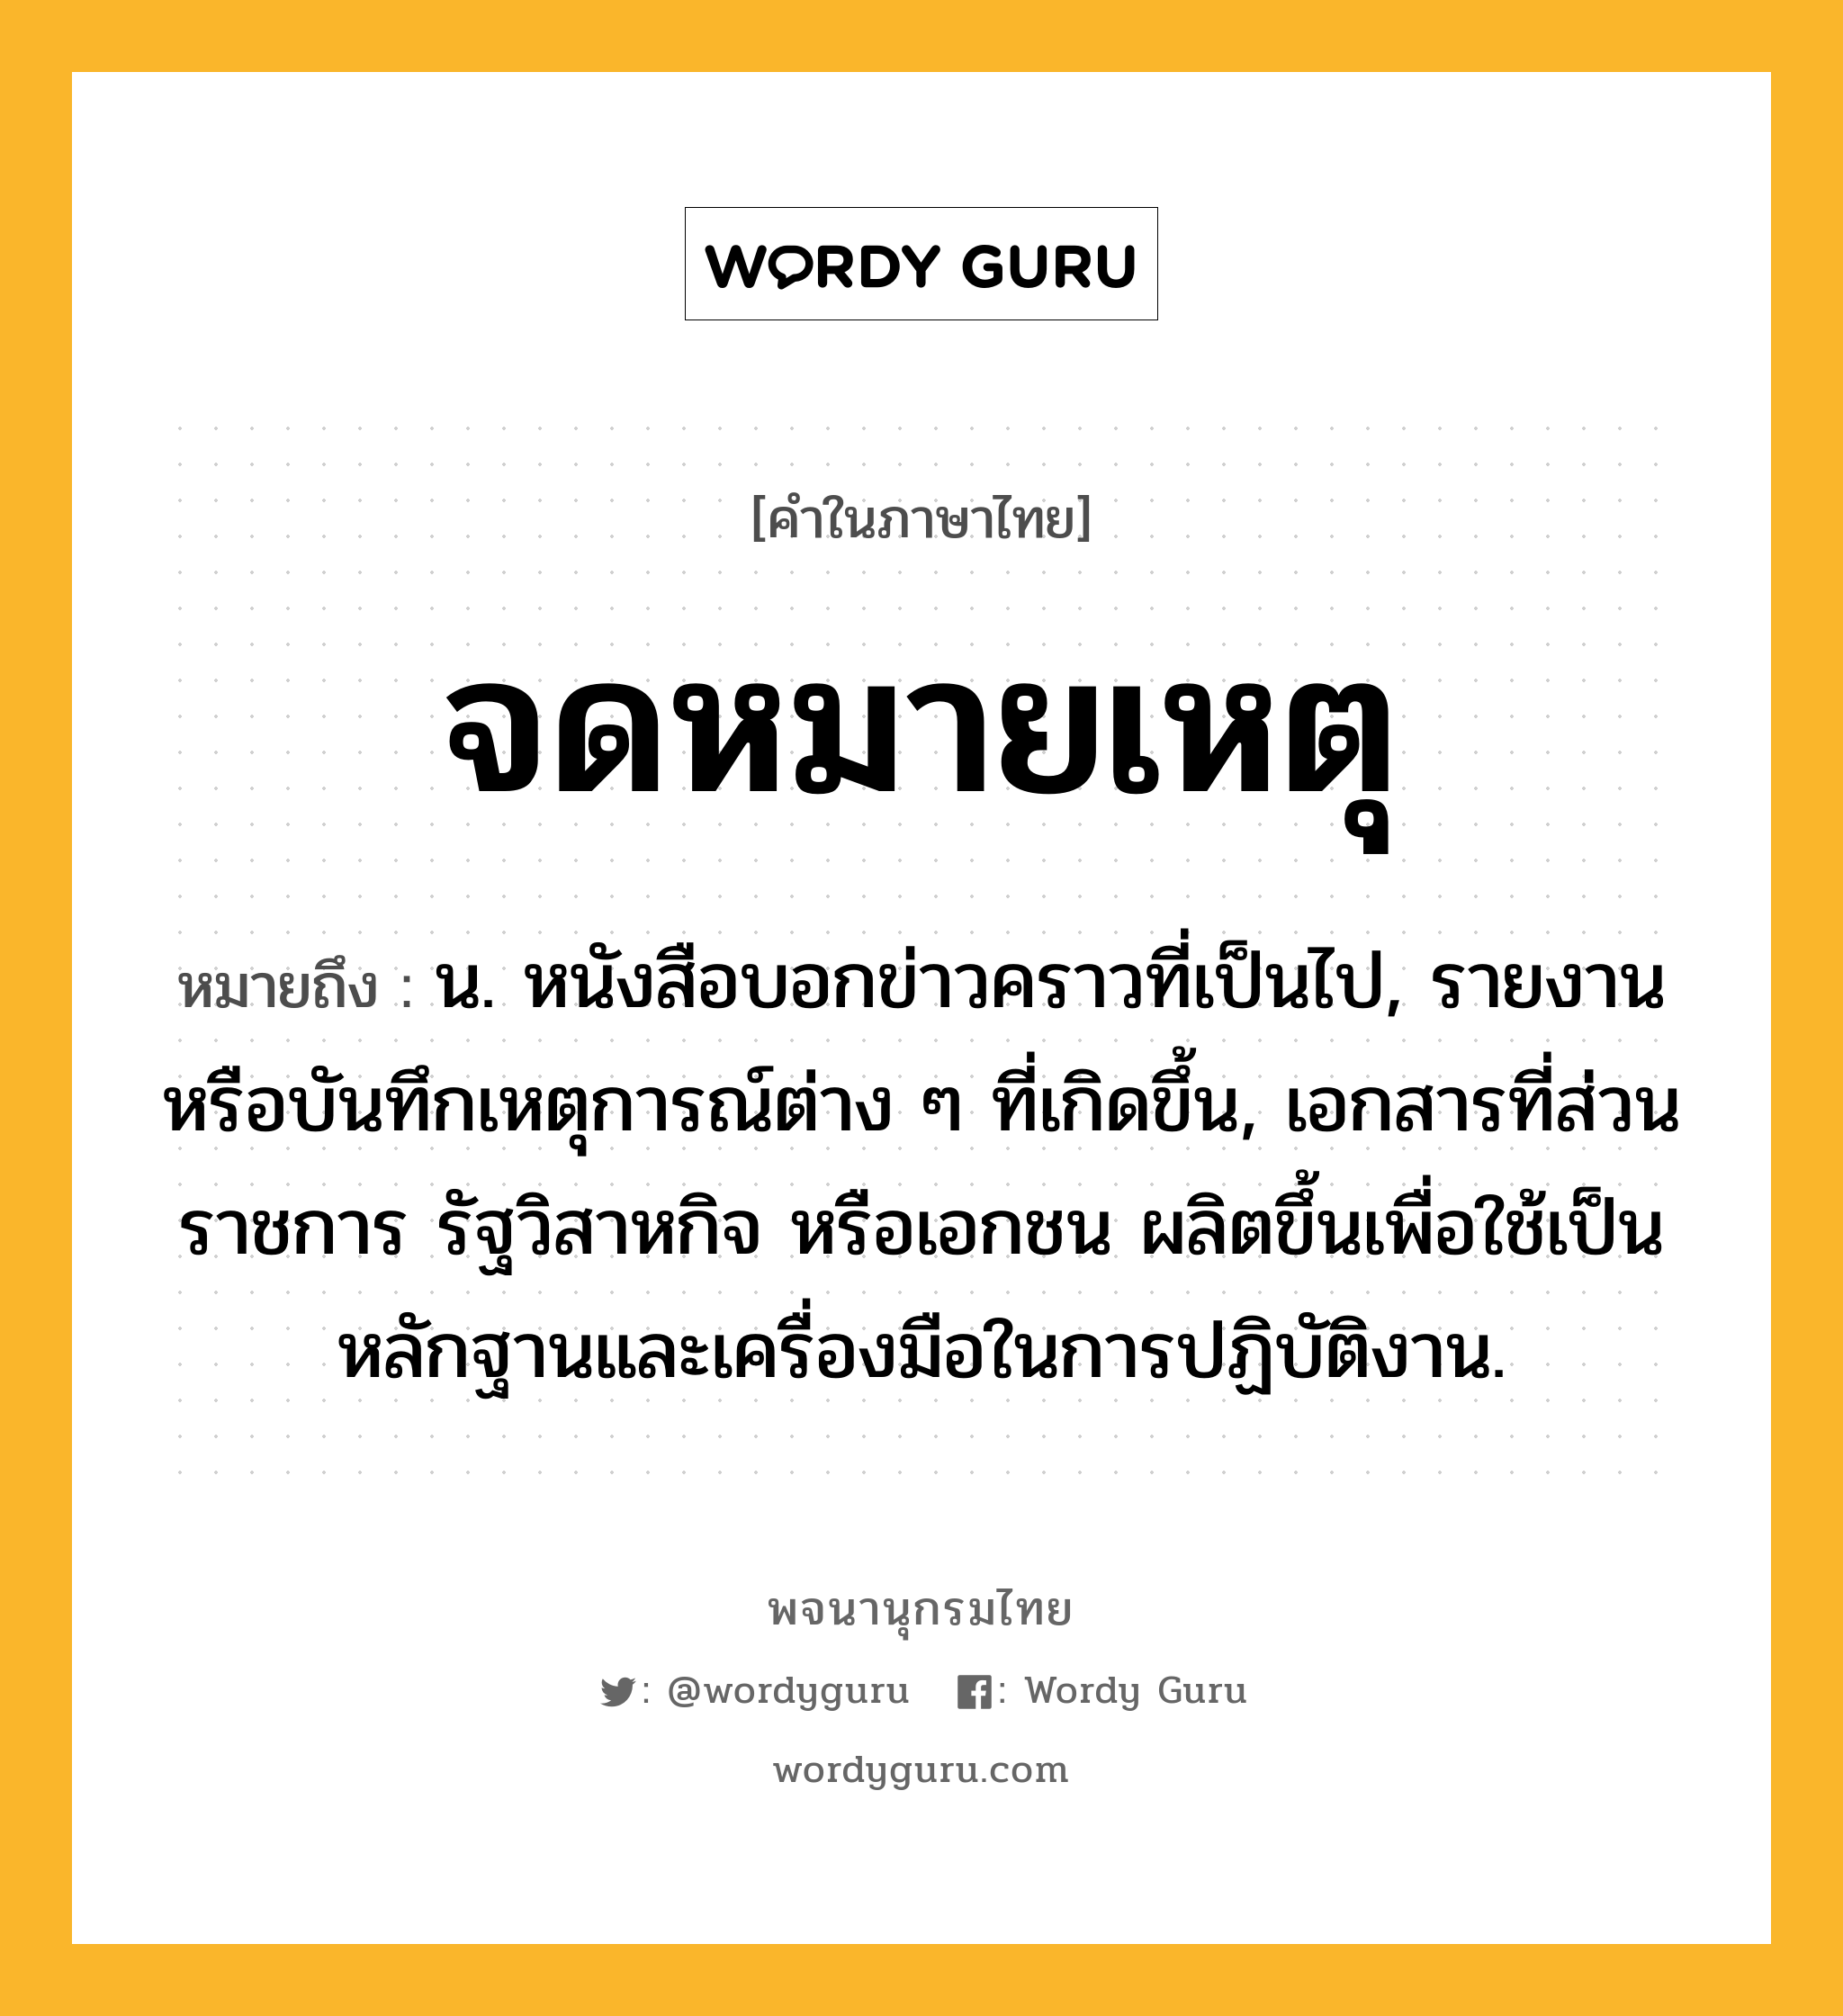 จดหมายเหตุ หมายถึงอะไร?, คำในภาษาไทย จดหมายเหตุ หมายถึง น. หนังสือบอกข่าวคราวที่เป็นไป, รายงานหรือบันทึกเหตุการณ์ต่าง ๆ ที่เกิดขึ้น, เอกสารที่ส่วนราชการ รัฐวิสาหกิจ หรือเอกชน ผลิตขึ้นเพื่อใช้เป็นหลักฐานและเครื่องมือในการปฏิบัติงาน.